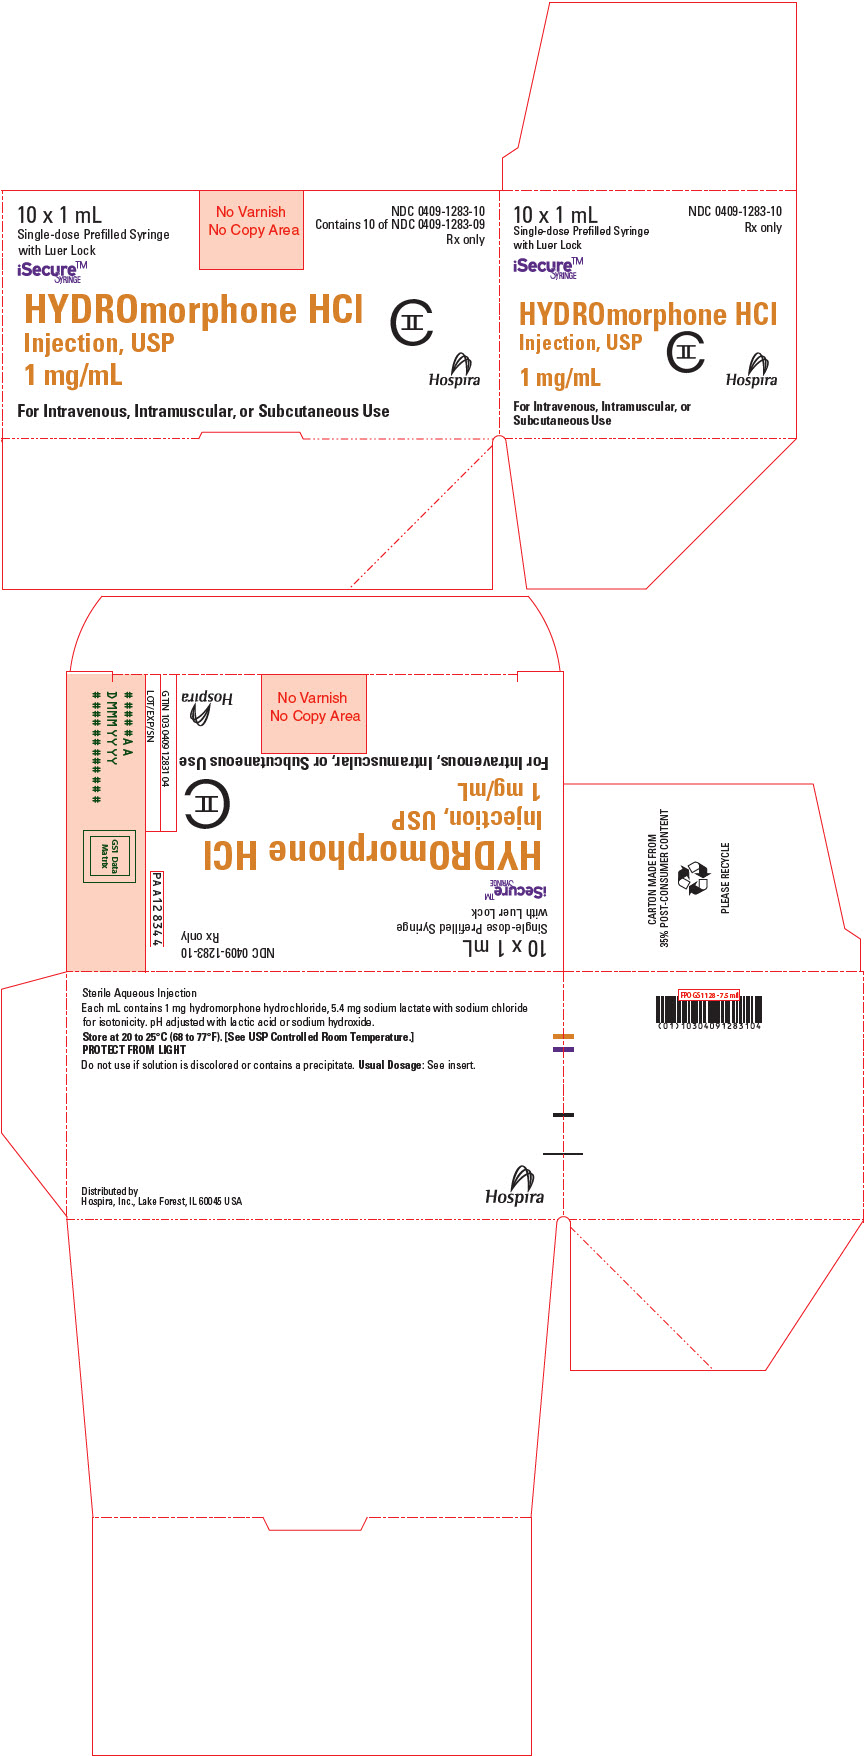 PRINCIPAL DISPLAY PANEL - 1 mg/mL Syringe Carton